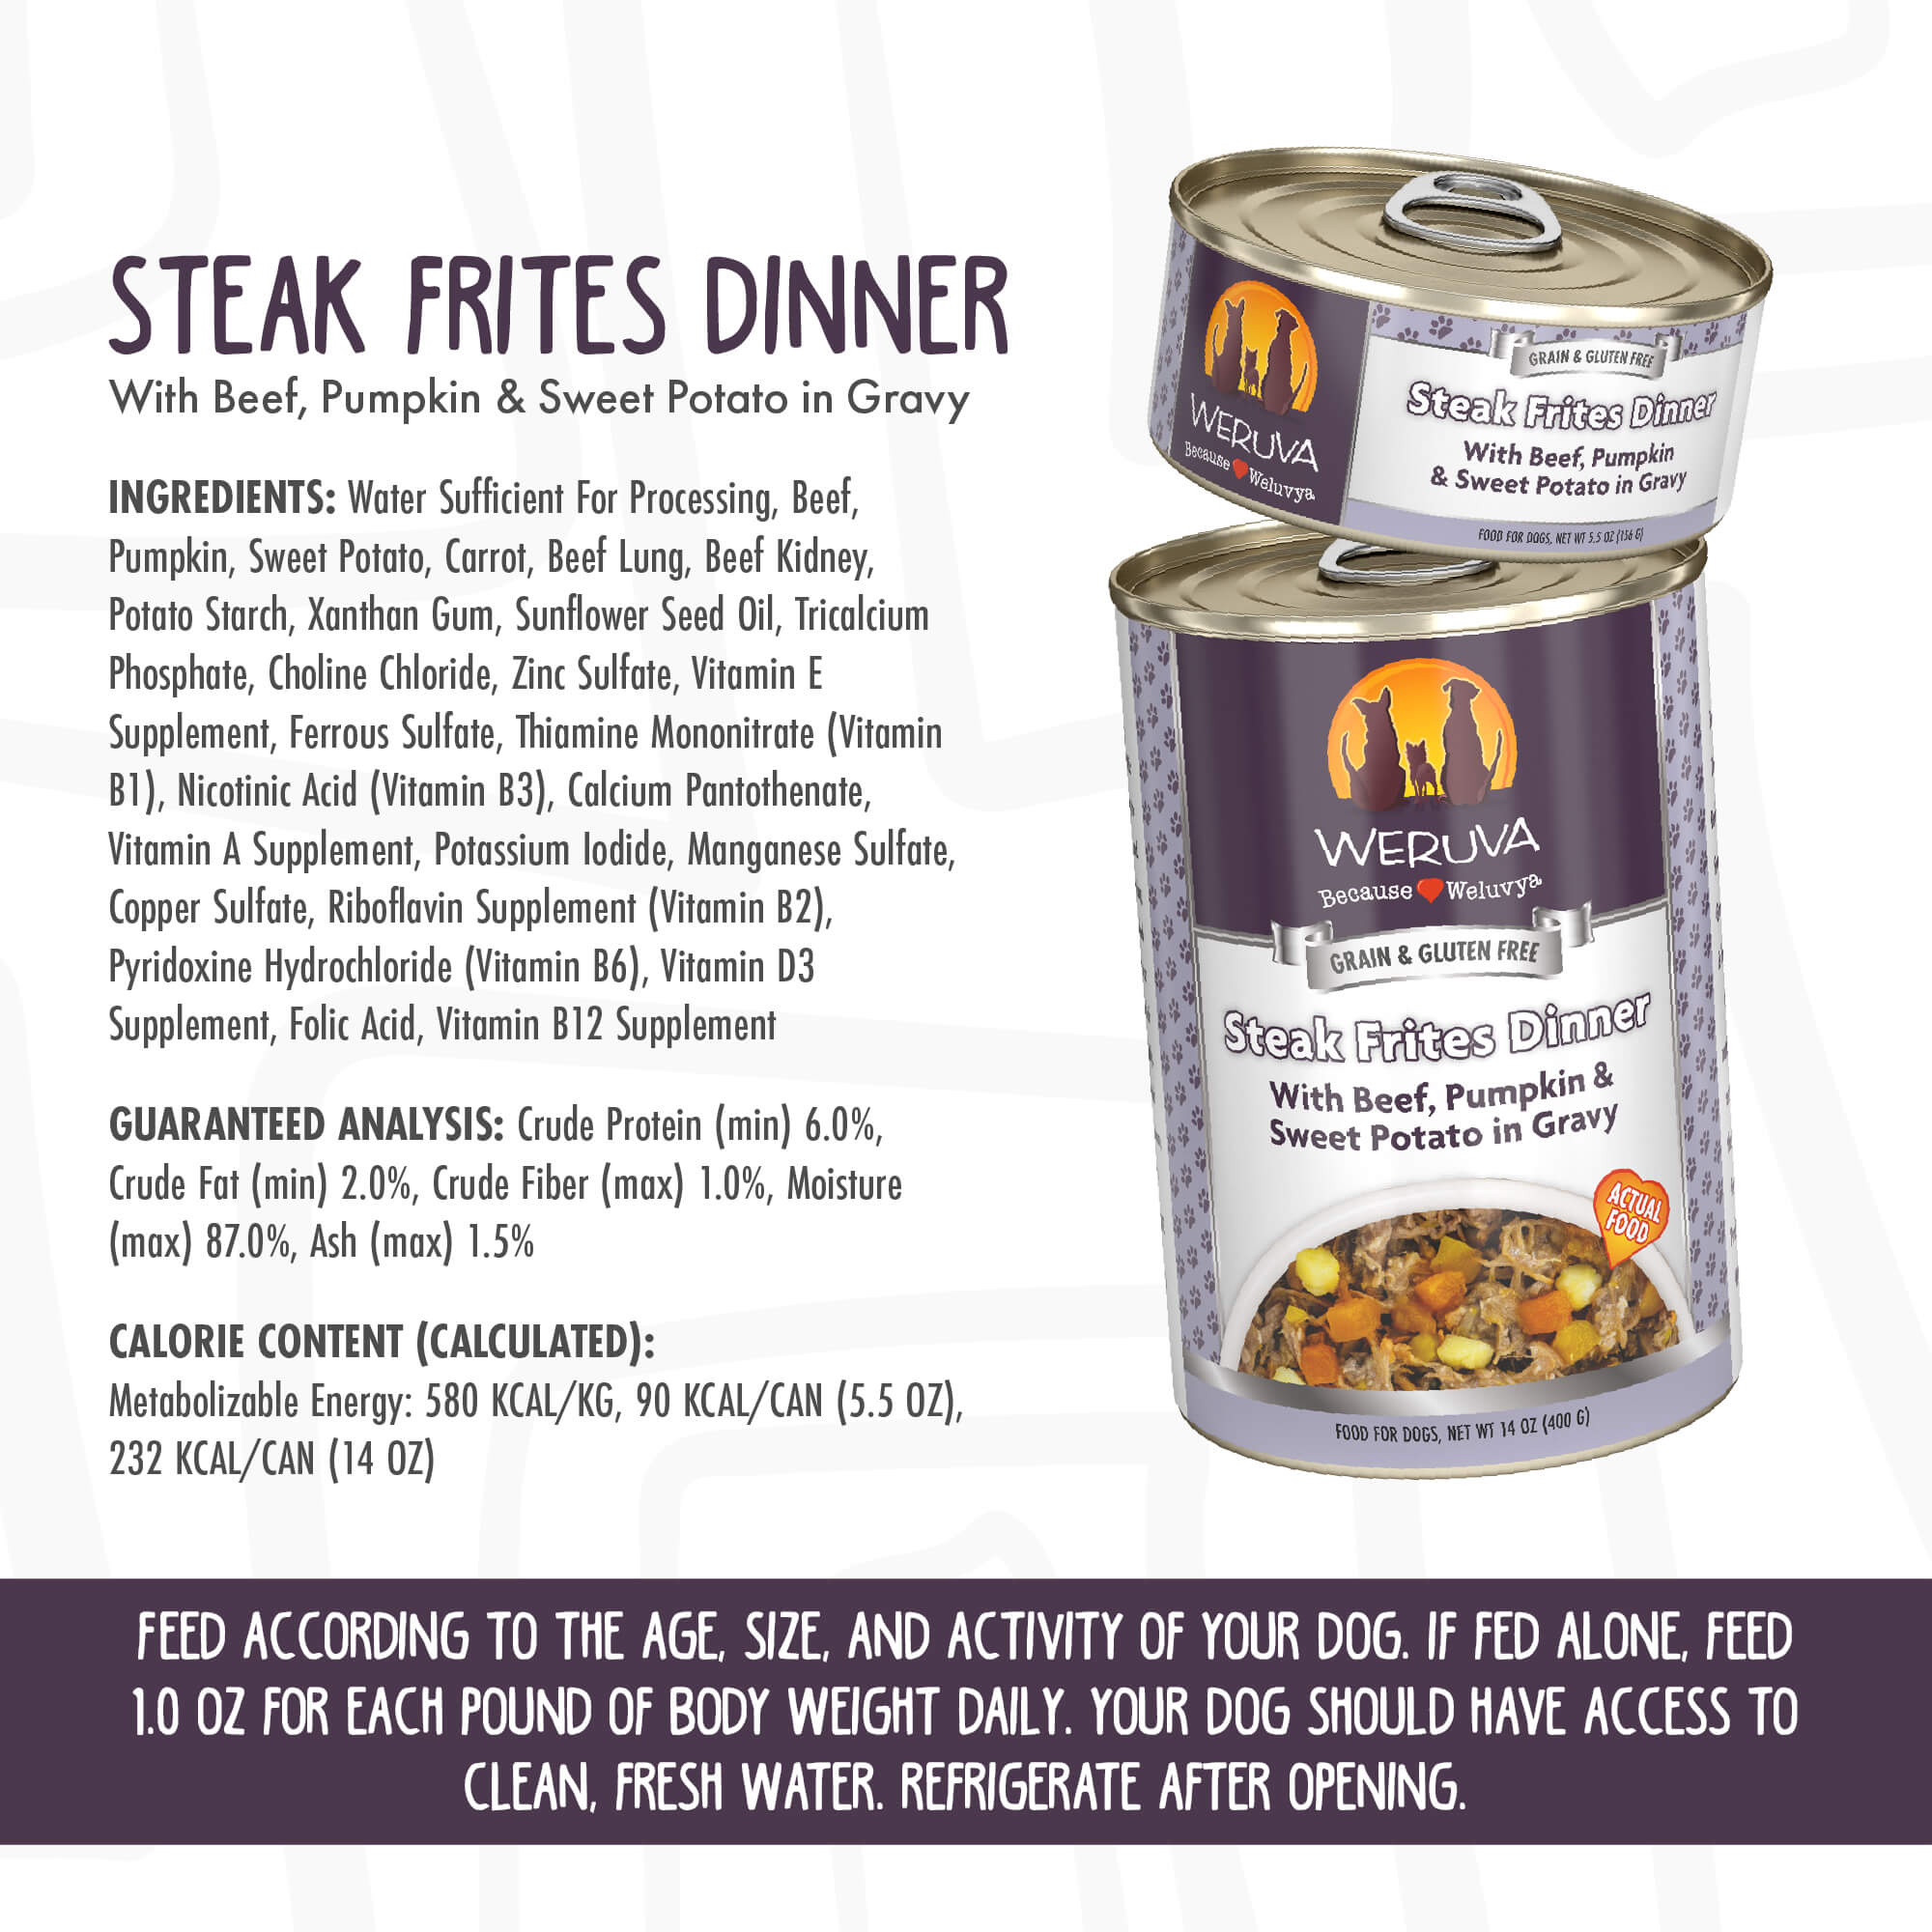 Weruva Steak Frites Dinner dog food ingredients and guaranteed analysis